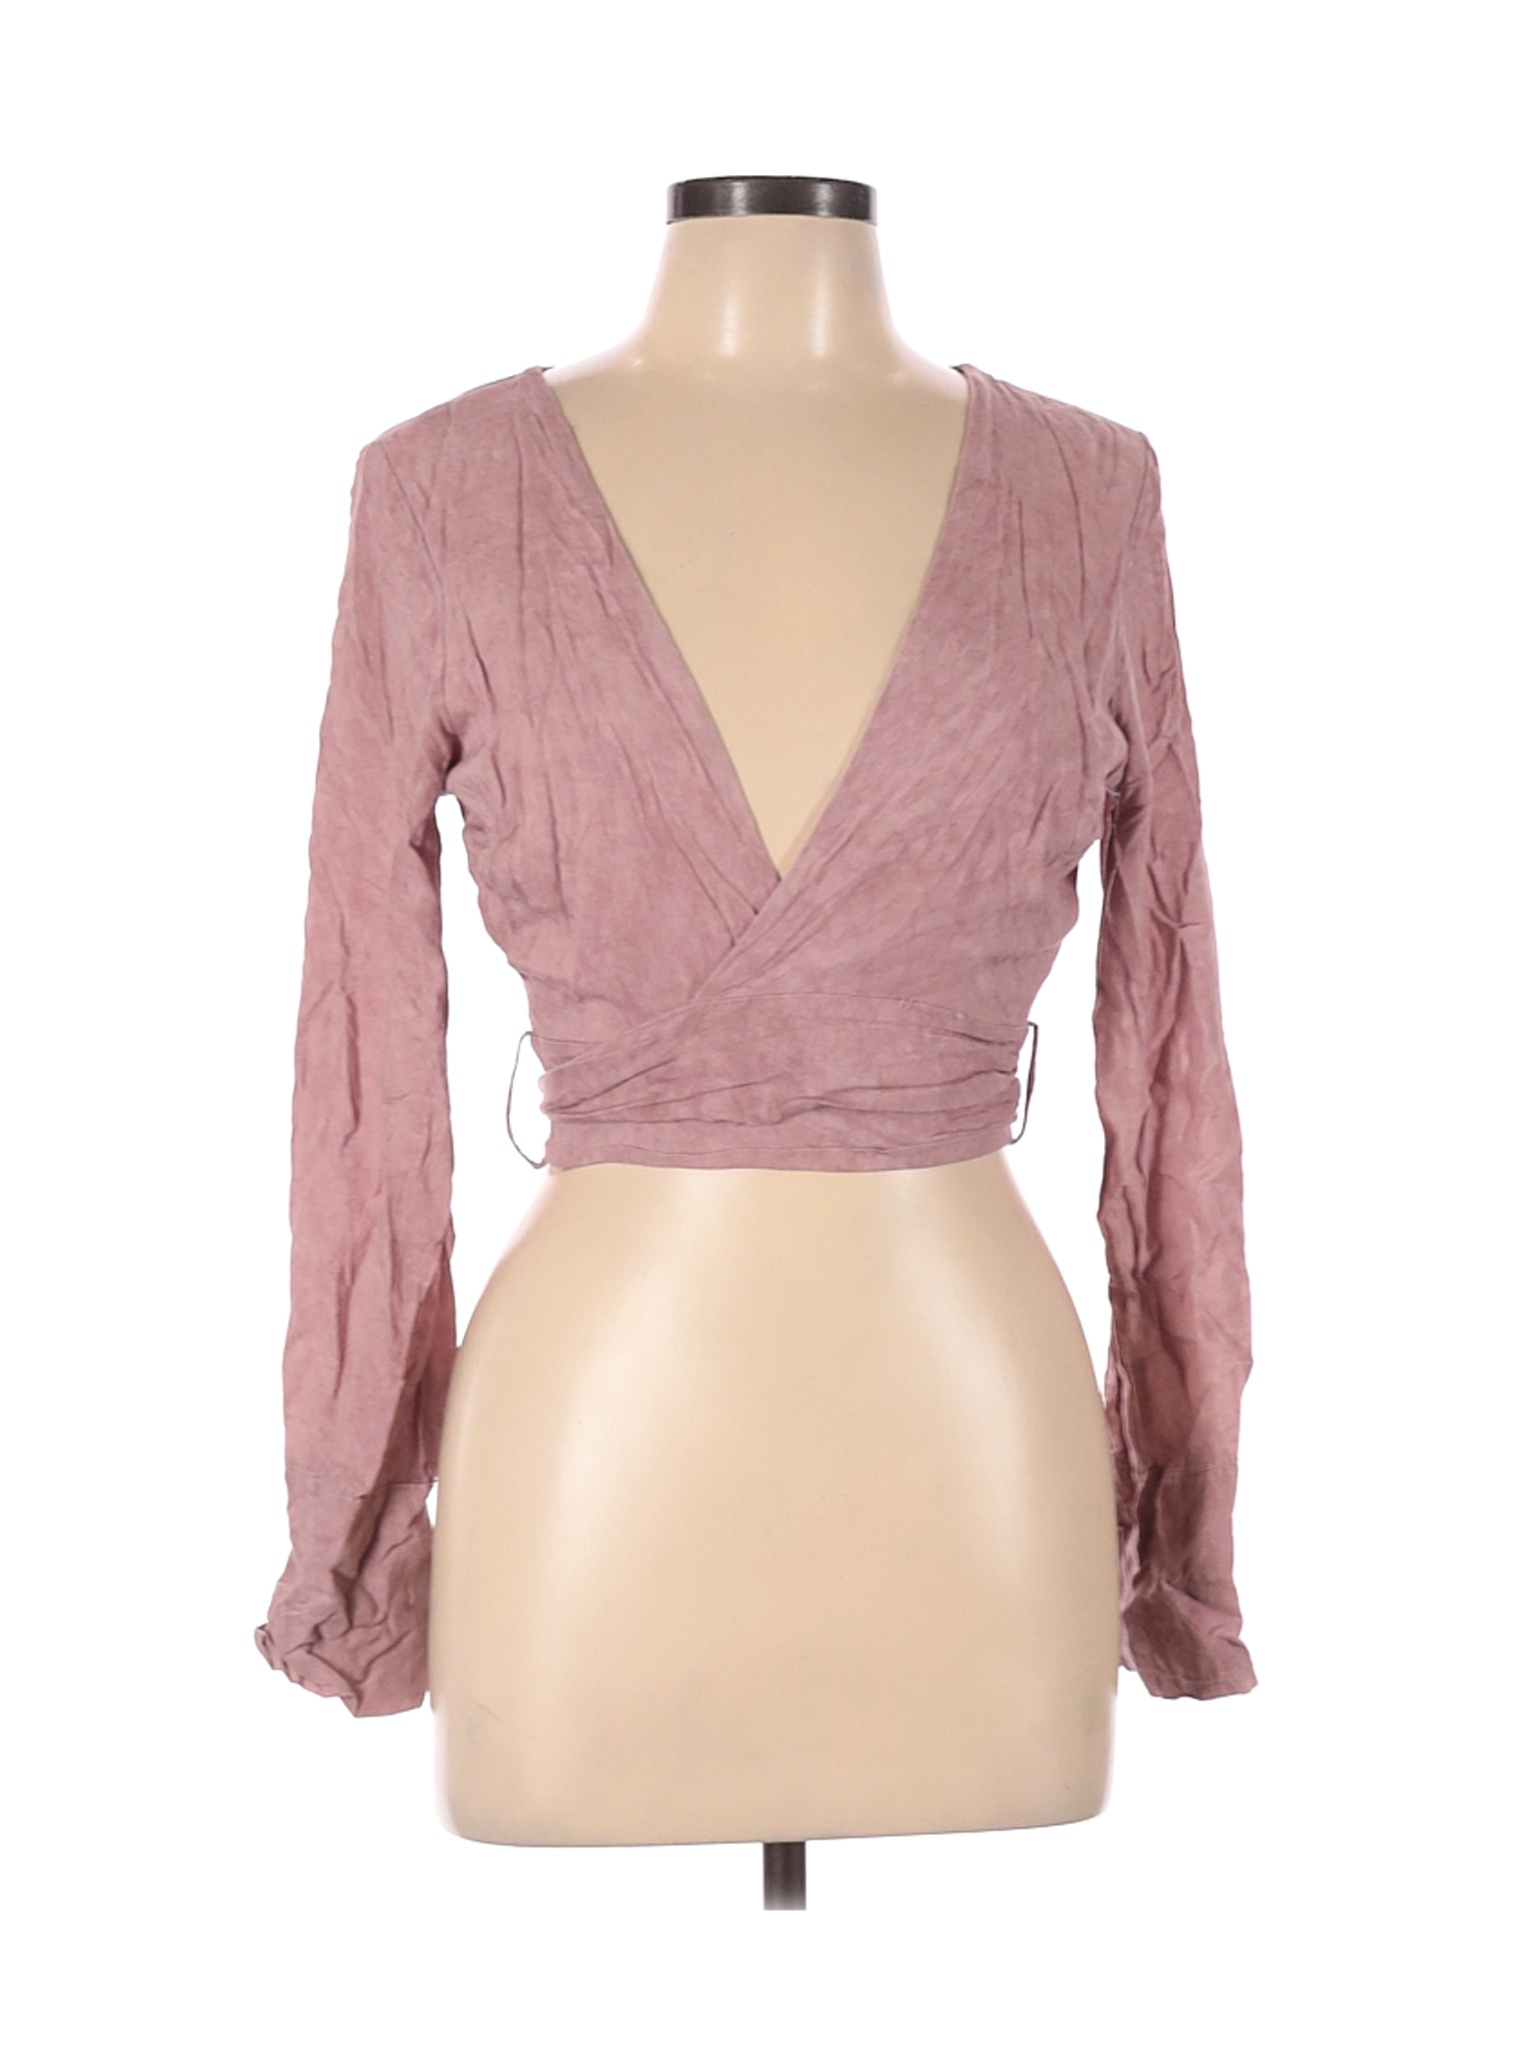 Fashion Nova Women Pink Long Sleeve Blouse L | eBay